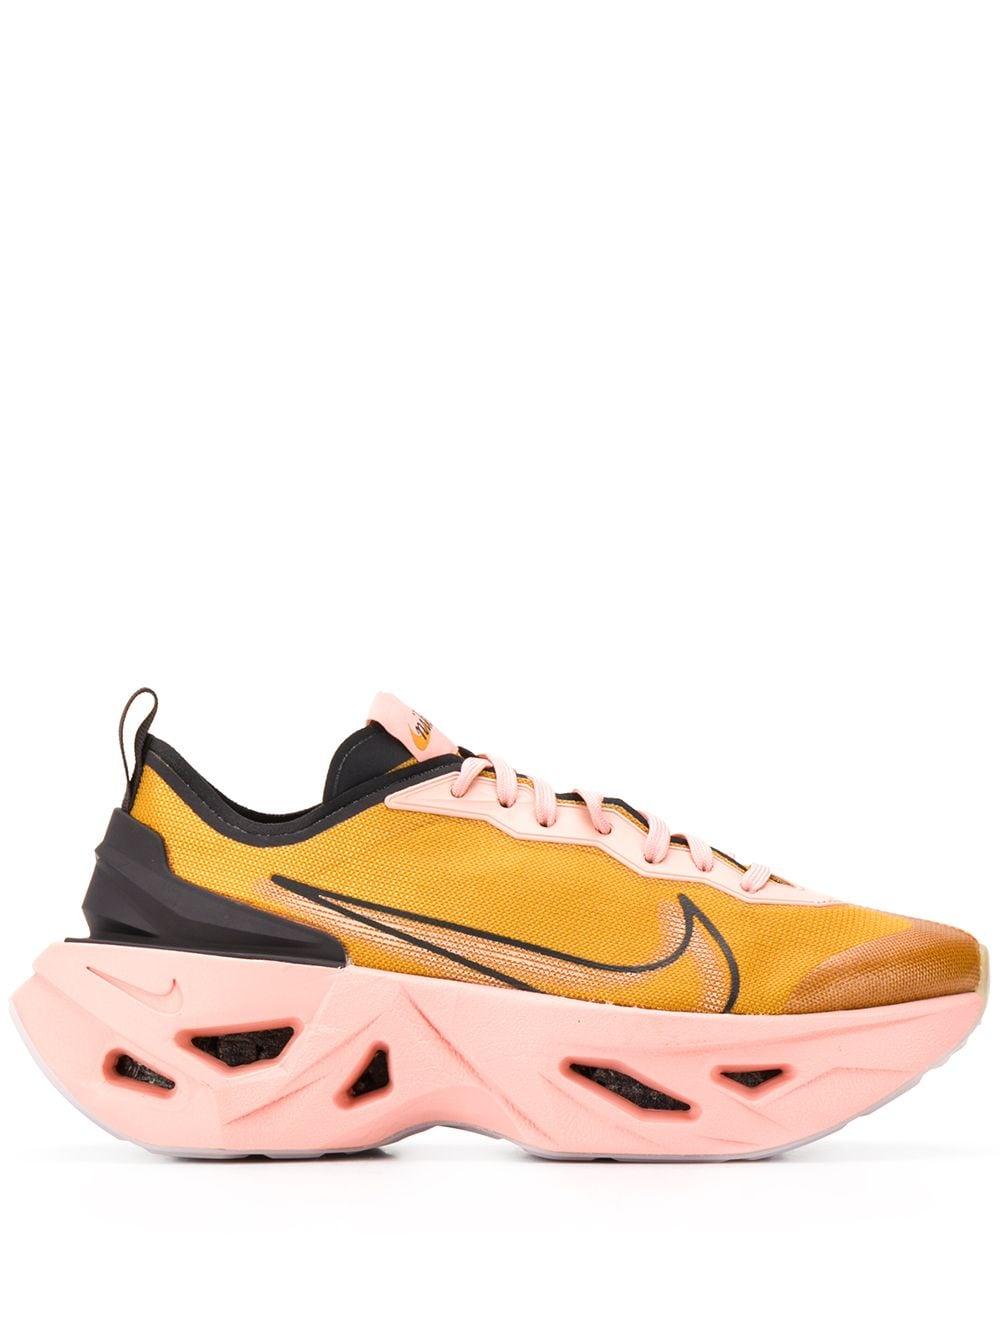 Nike Zoom X Vista Grind Sneakers in Pink | Lyst